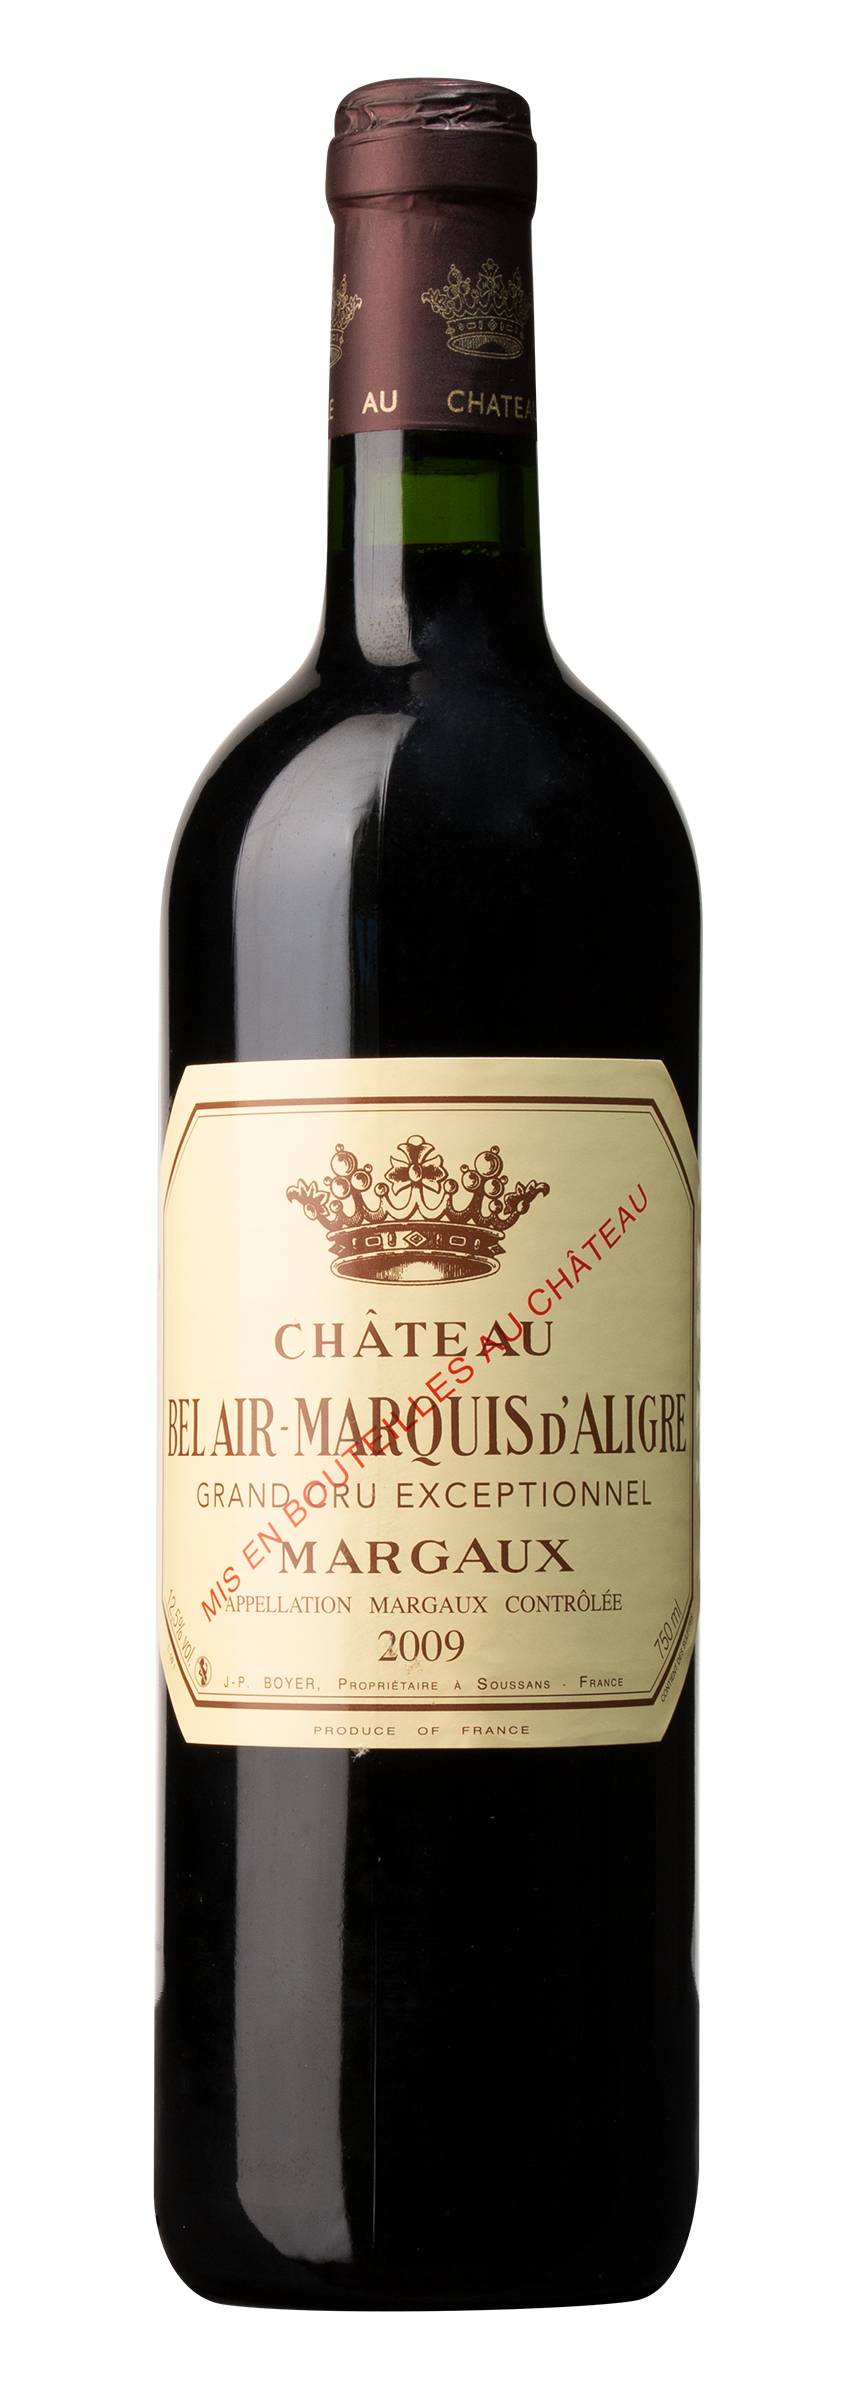 Château Bel Air-Marquis d’Aligre Margaux, rouge